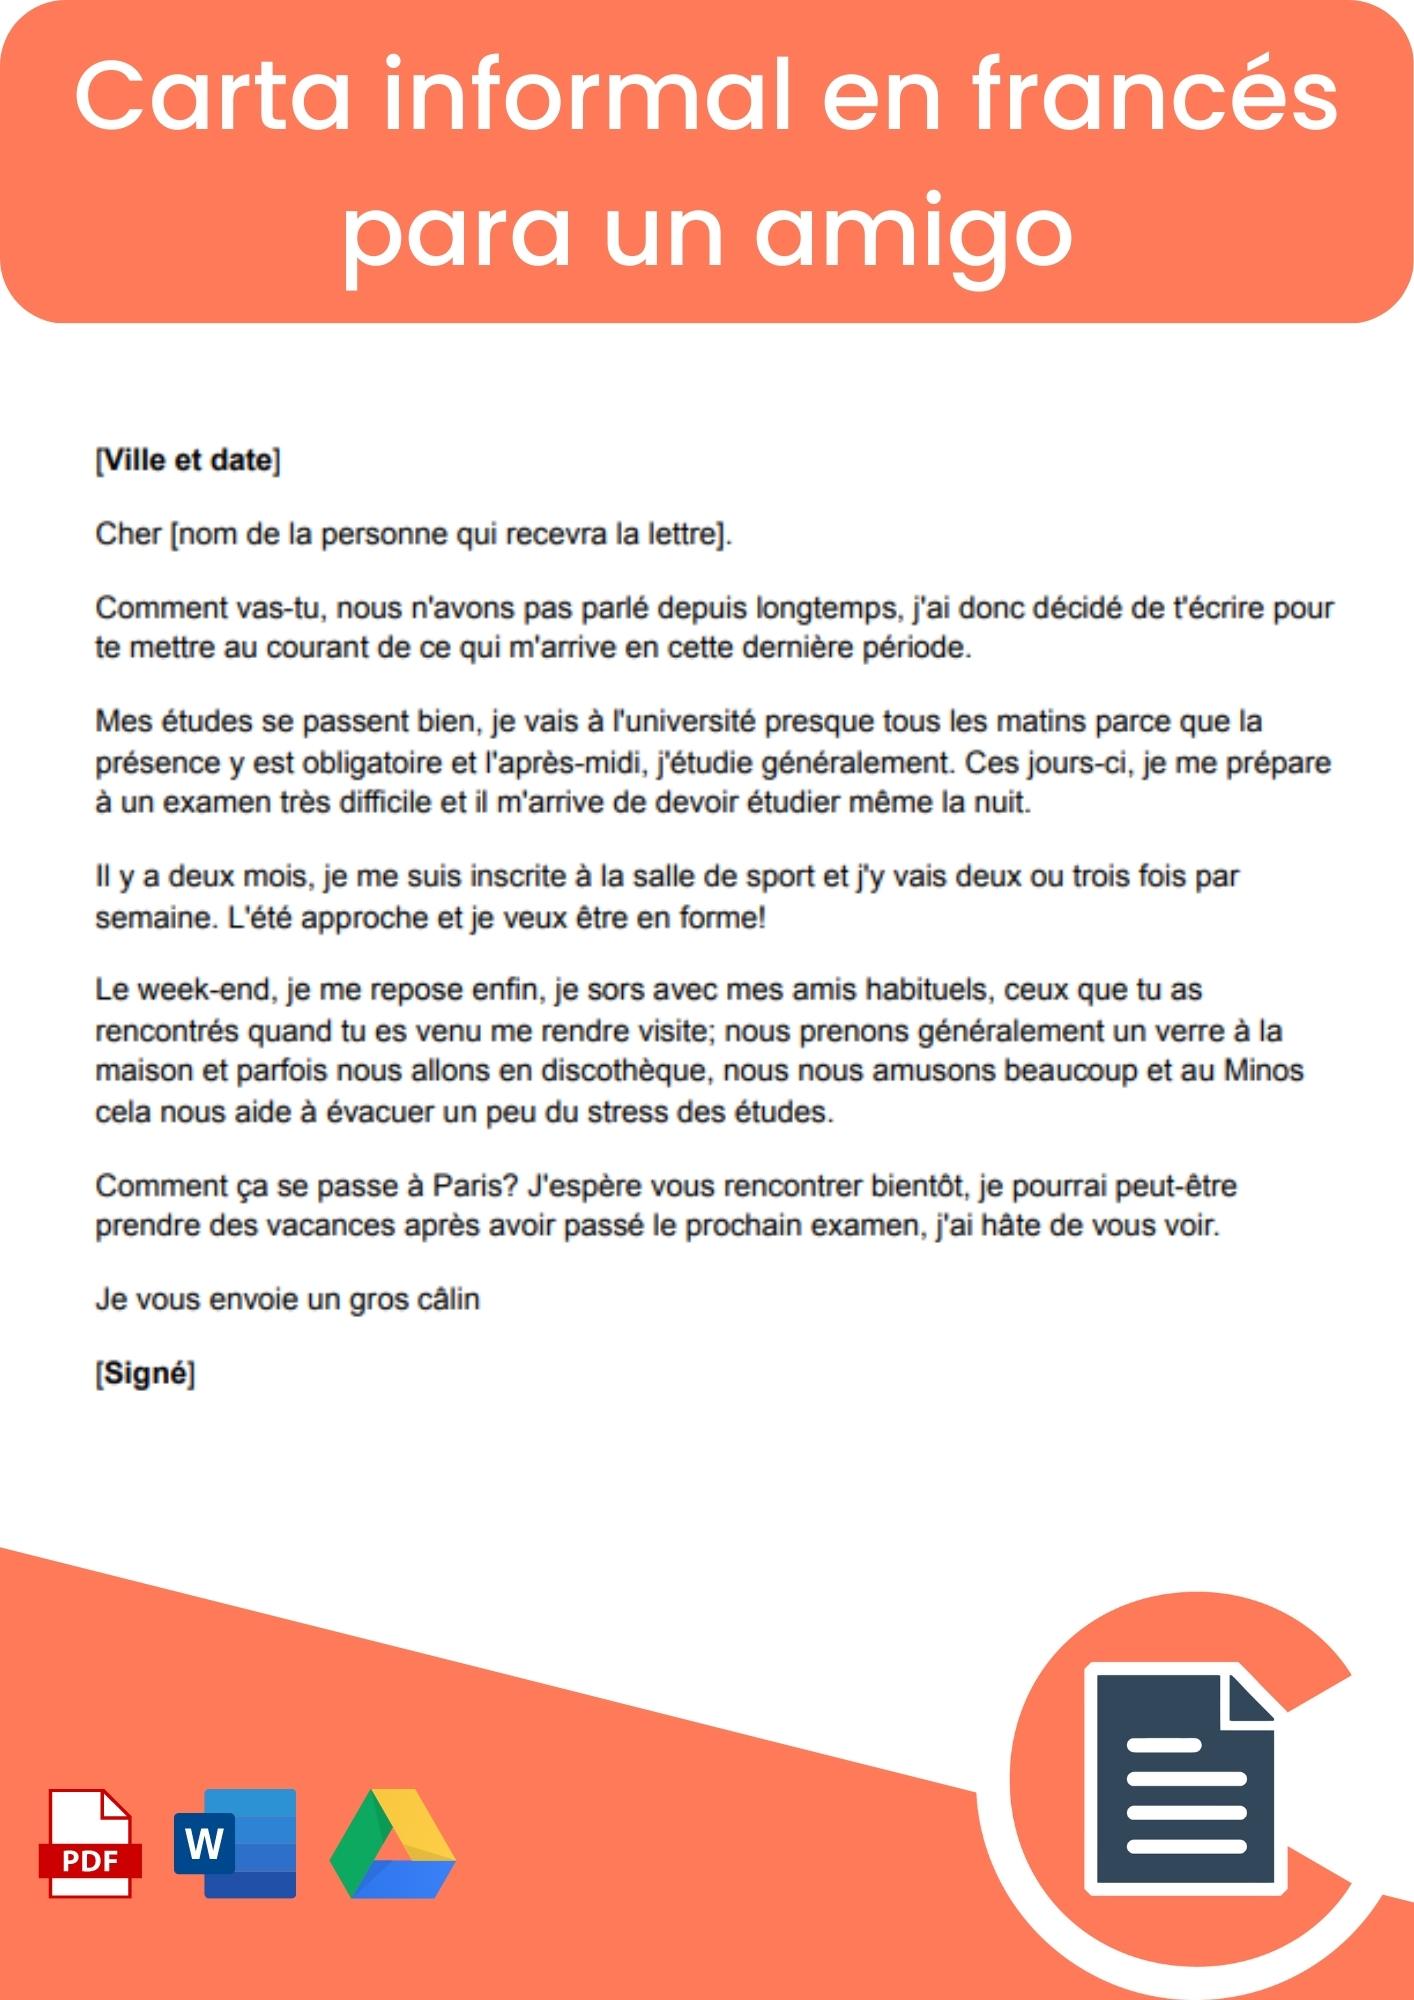 Carta informal en francés para un amigo